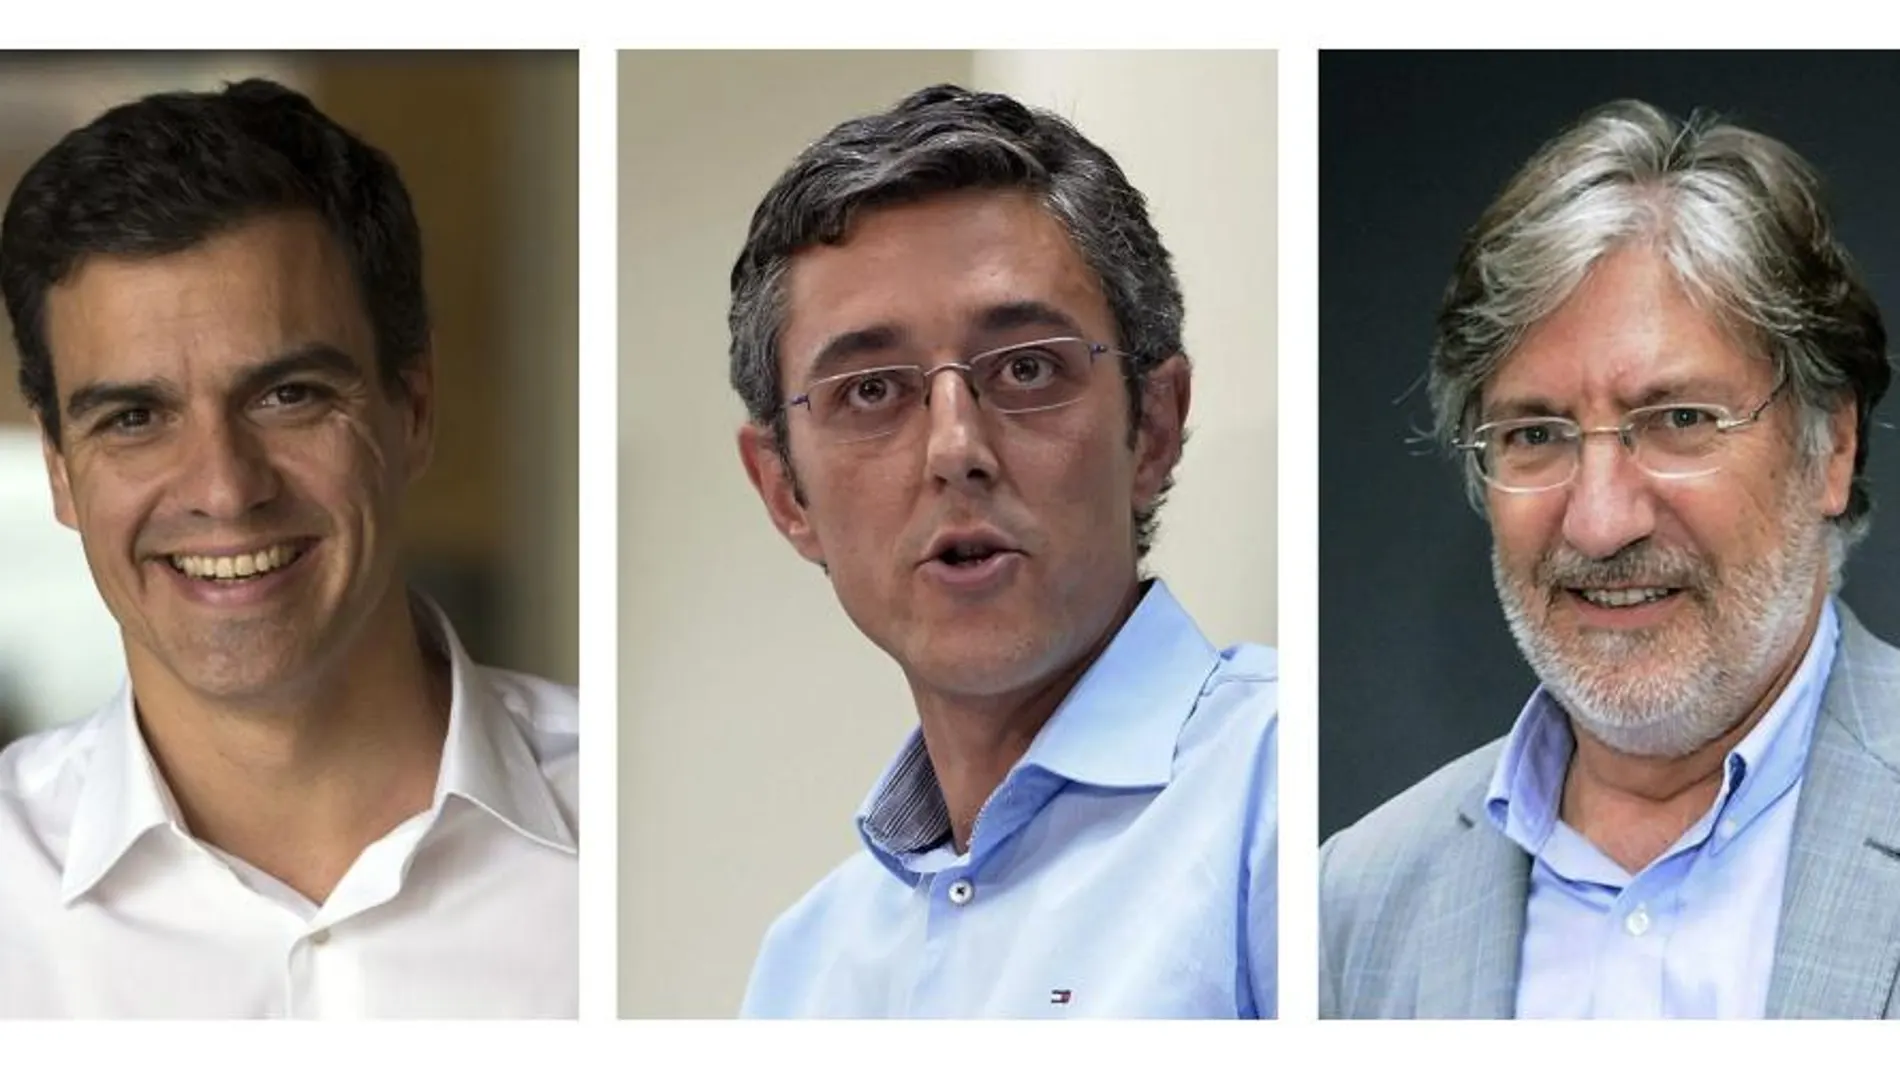 Fotografías de los candidatos oficiales a secretario general del PSOE, Pedro Sánchez (i), Eduardo Madina (c) y José Antonio Pérez Tapias (d).